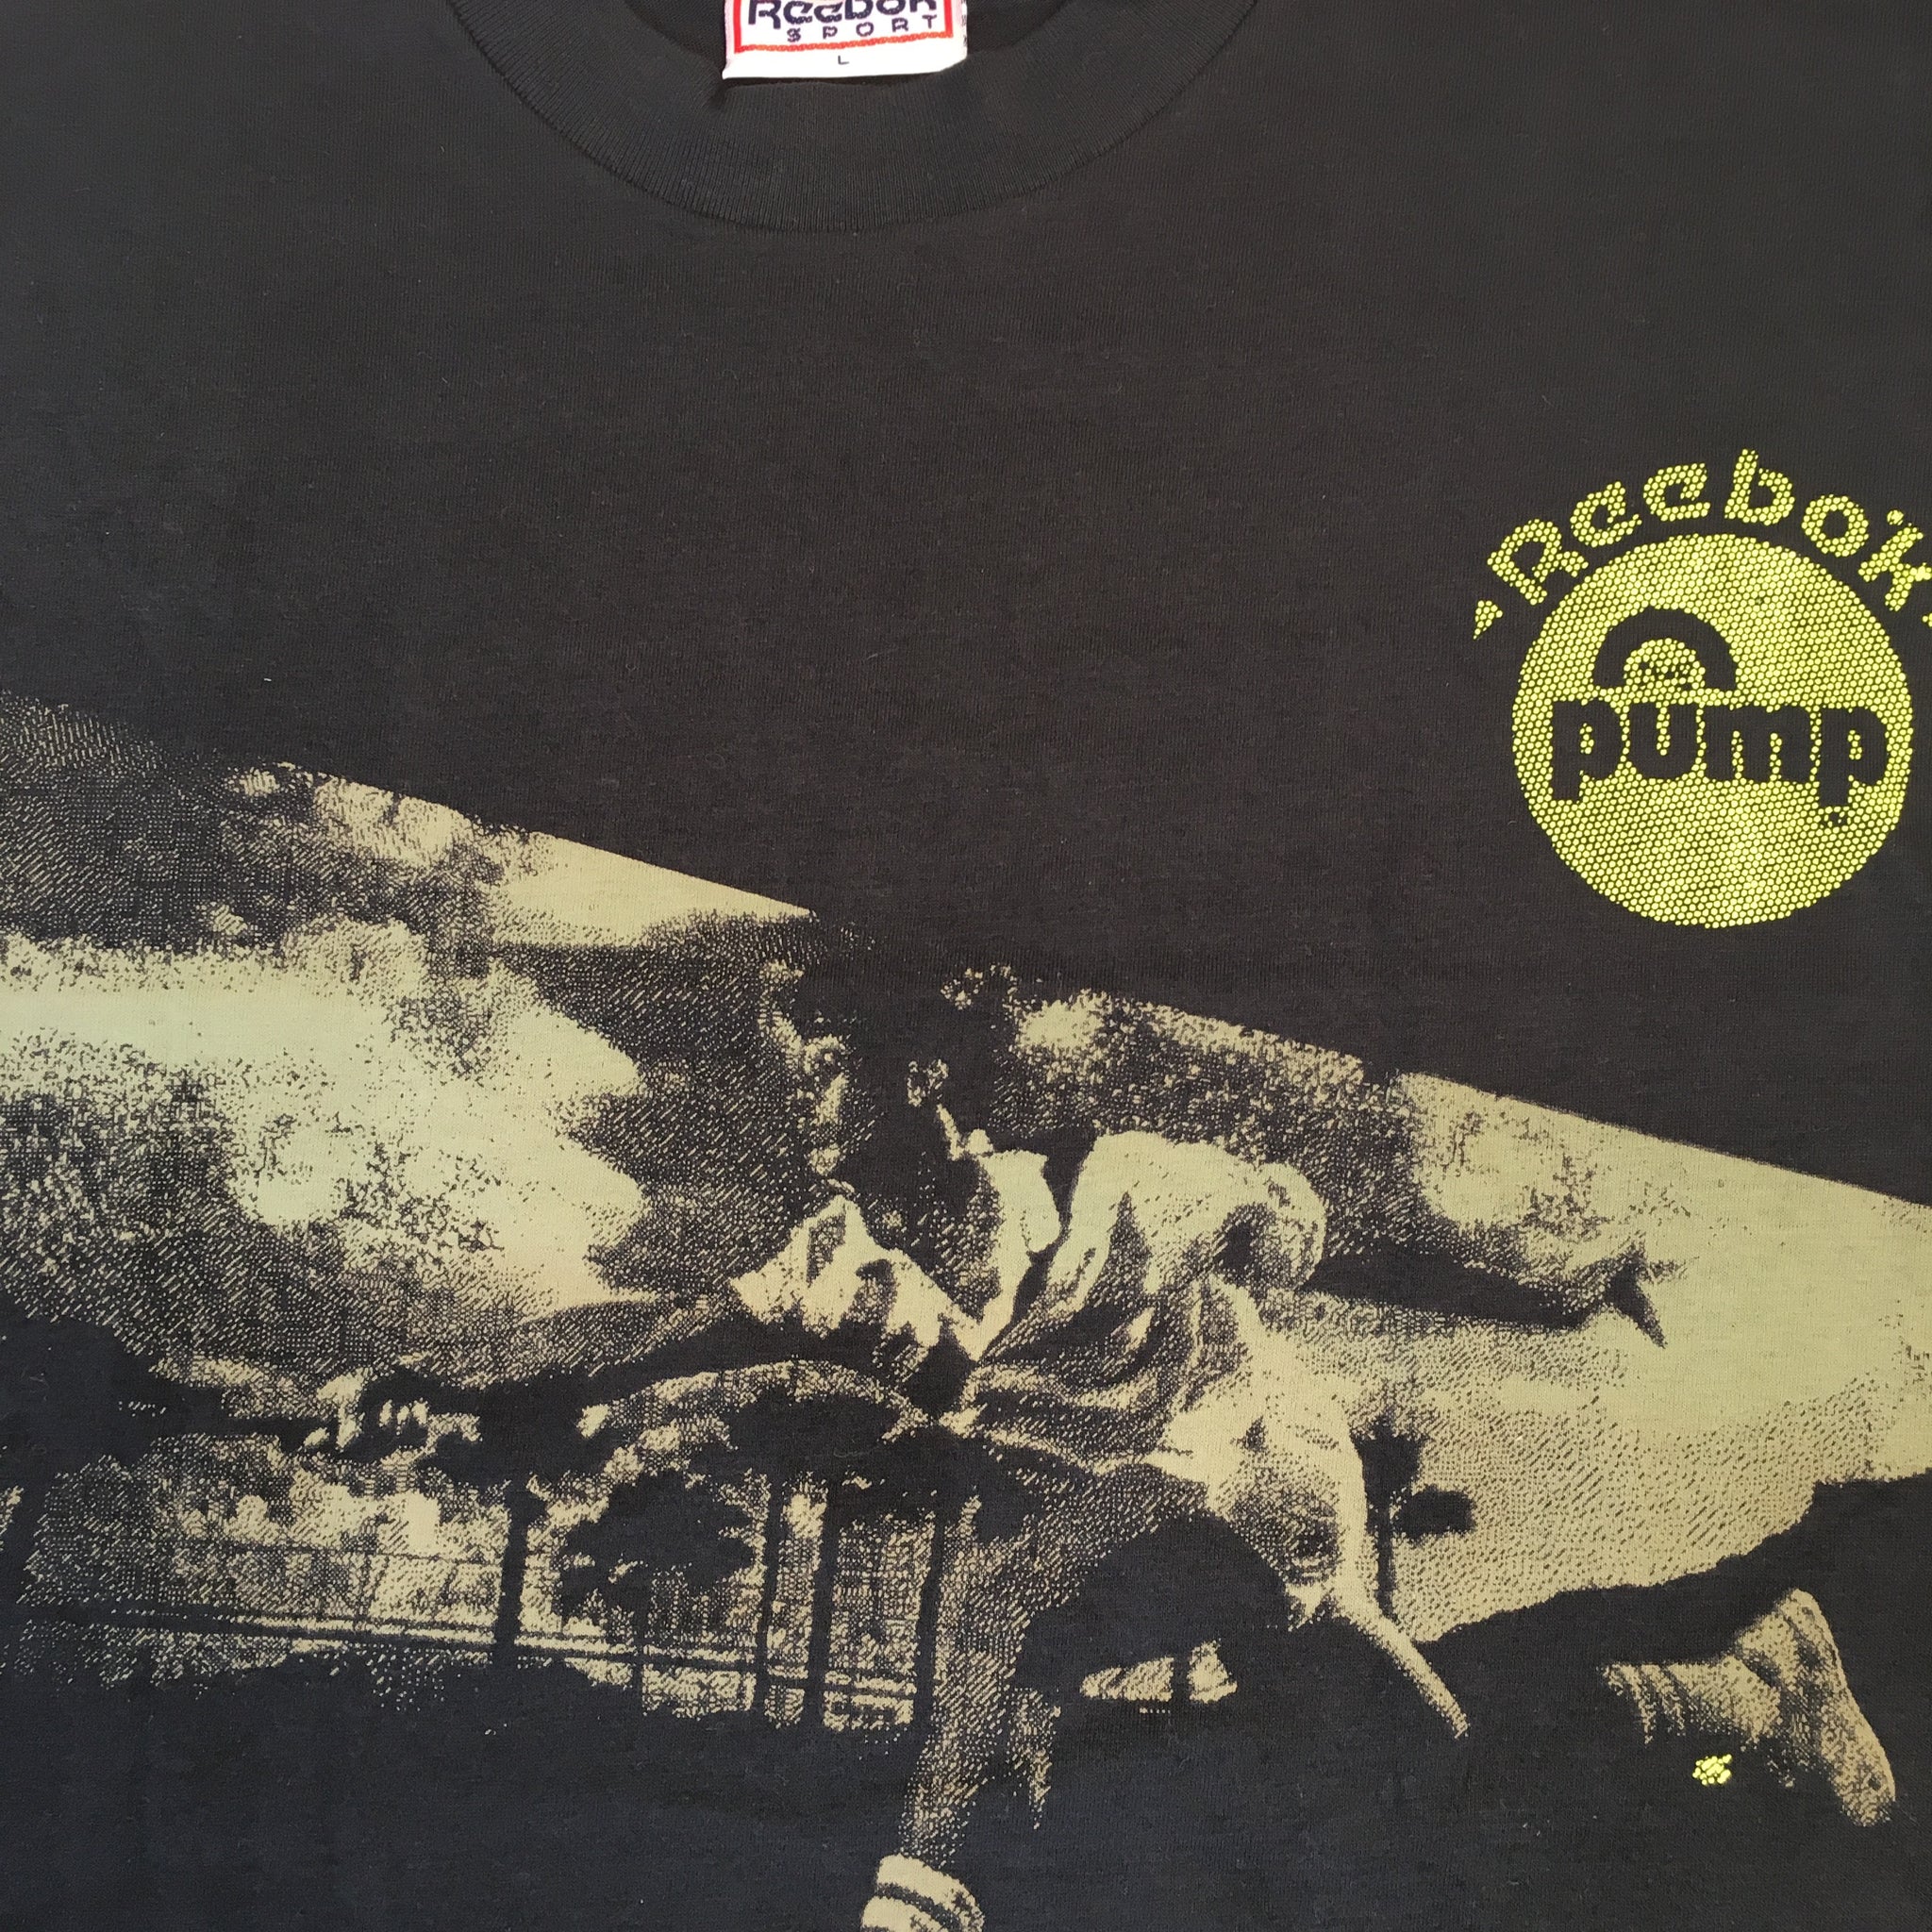 Vintage Reebok "Pump" | jointcustodydc